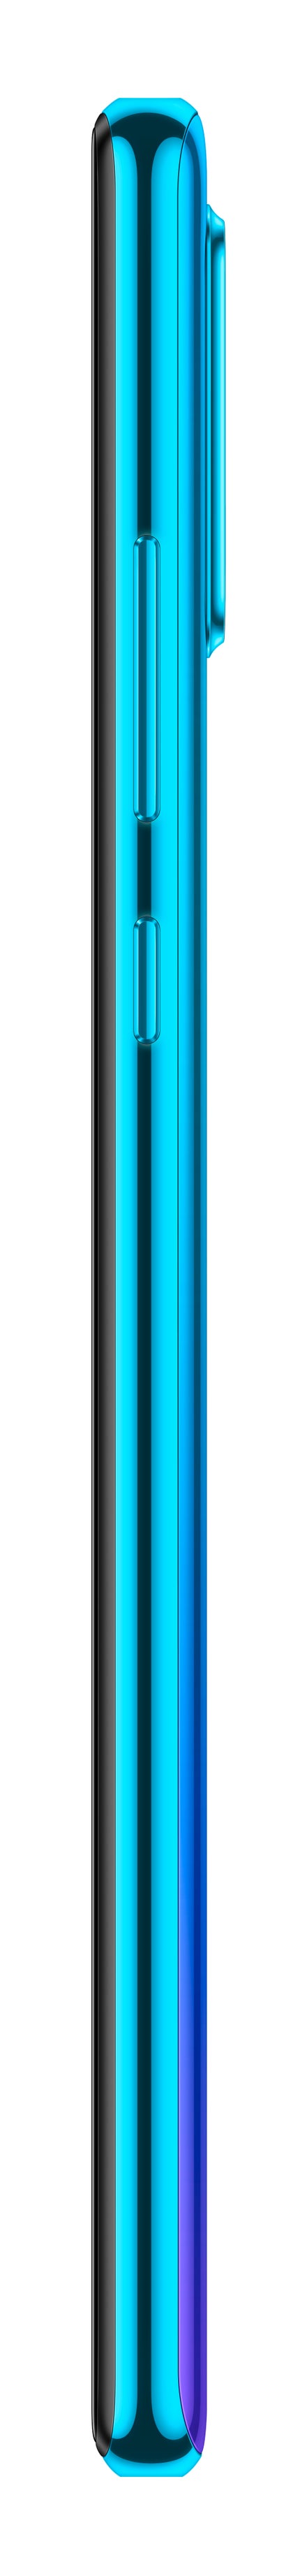 Huawei P30 Lite Peacock Blue. (Bild: Huawei)